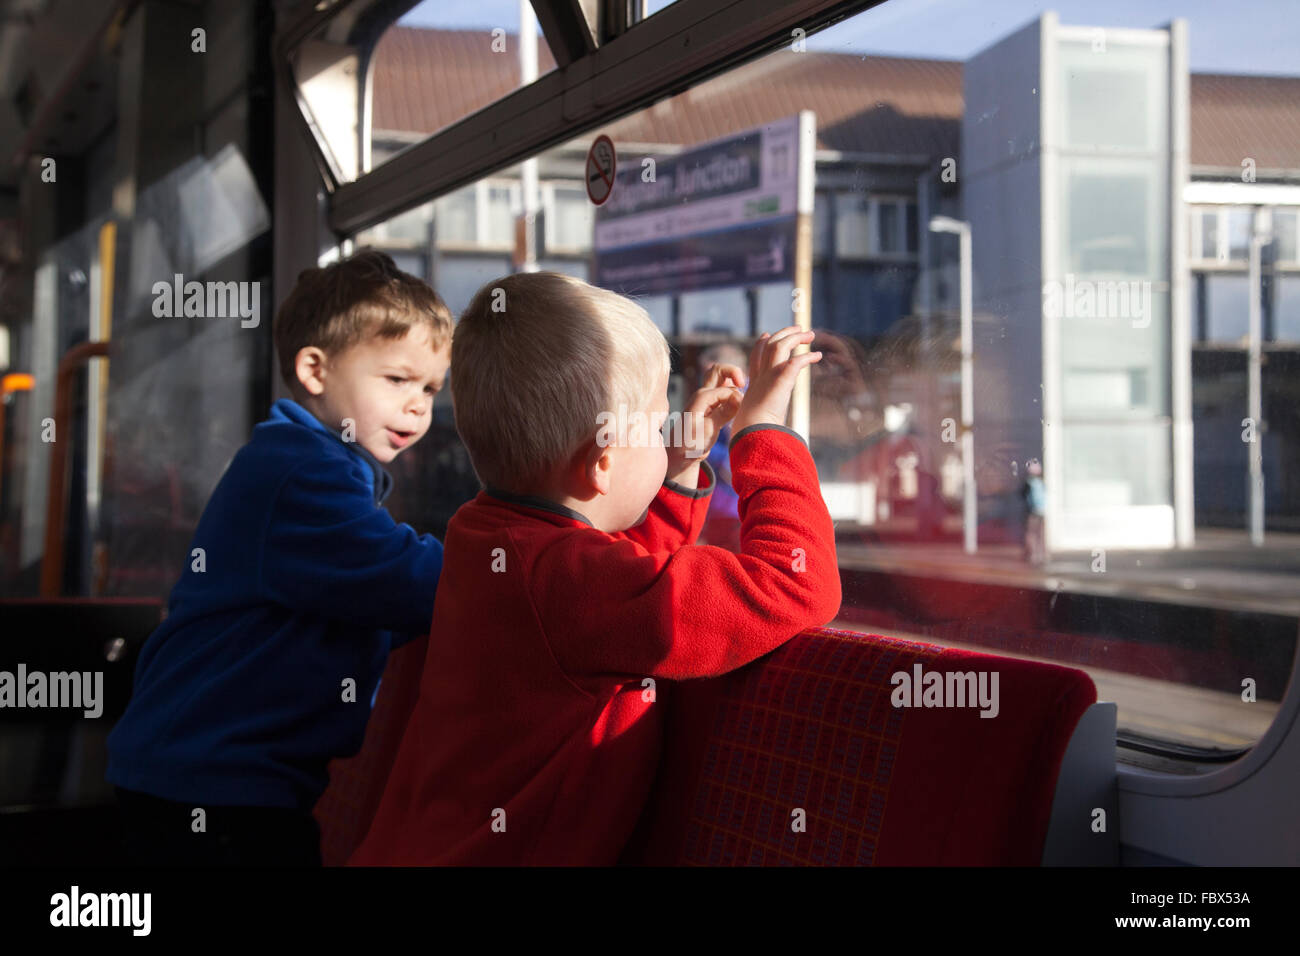 Zwei jungen schaut aus dem Fenster Wagen in Richtung Clapham Junction Bahnsteig während auf einer Zugfahrt, London, UK Stockfoto